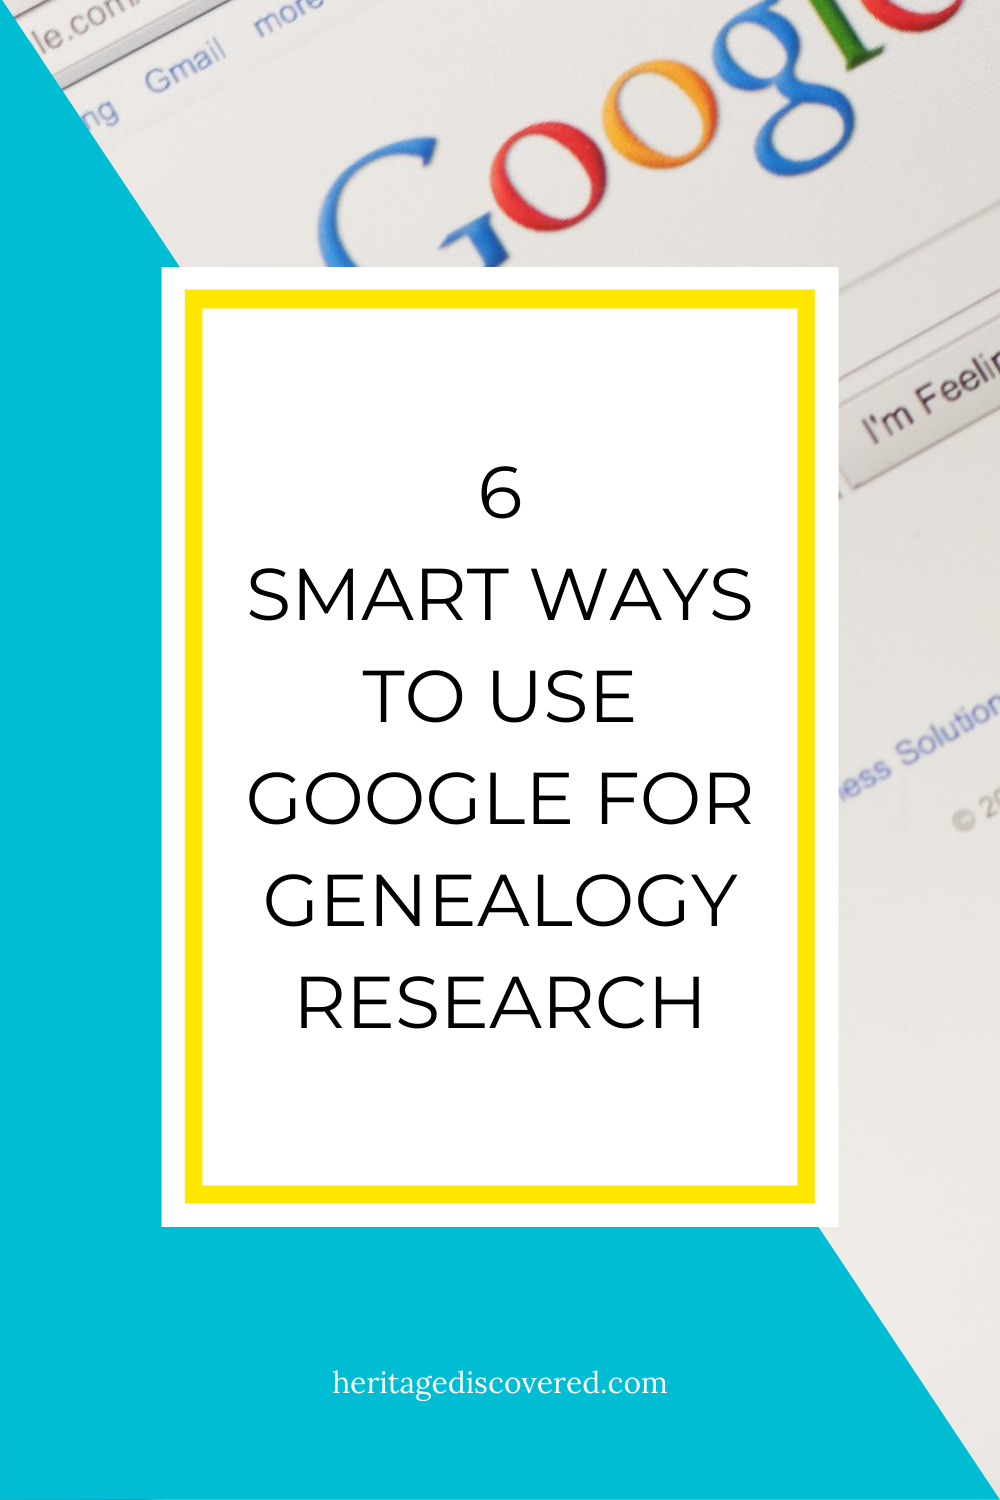 6-smart-ways-use-google-for-genealogy